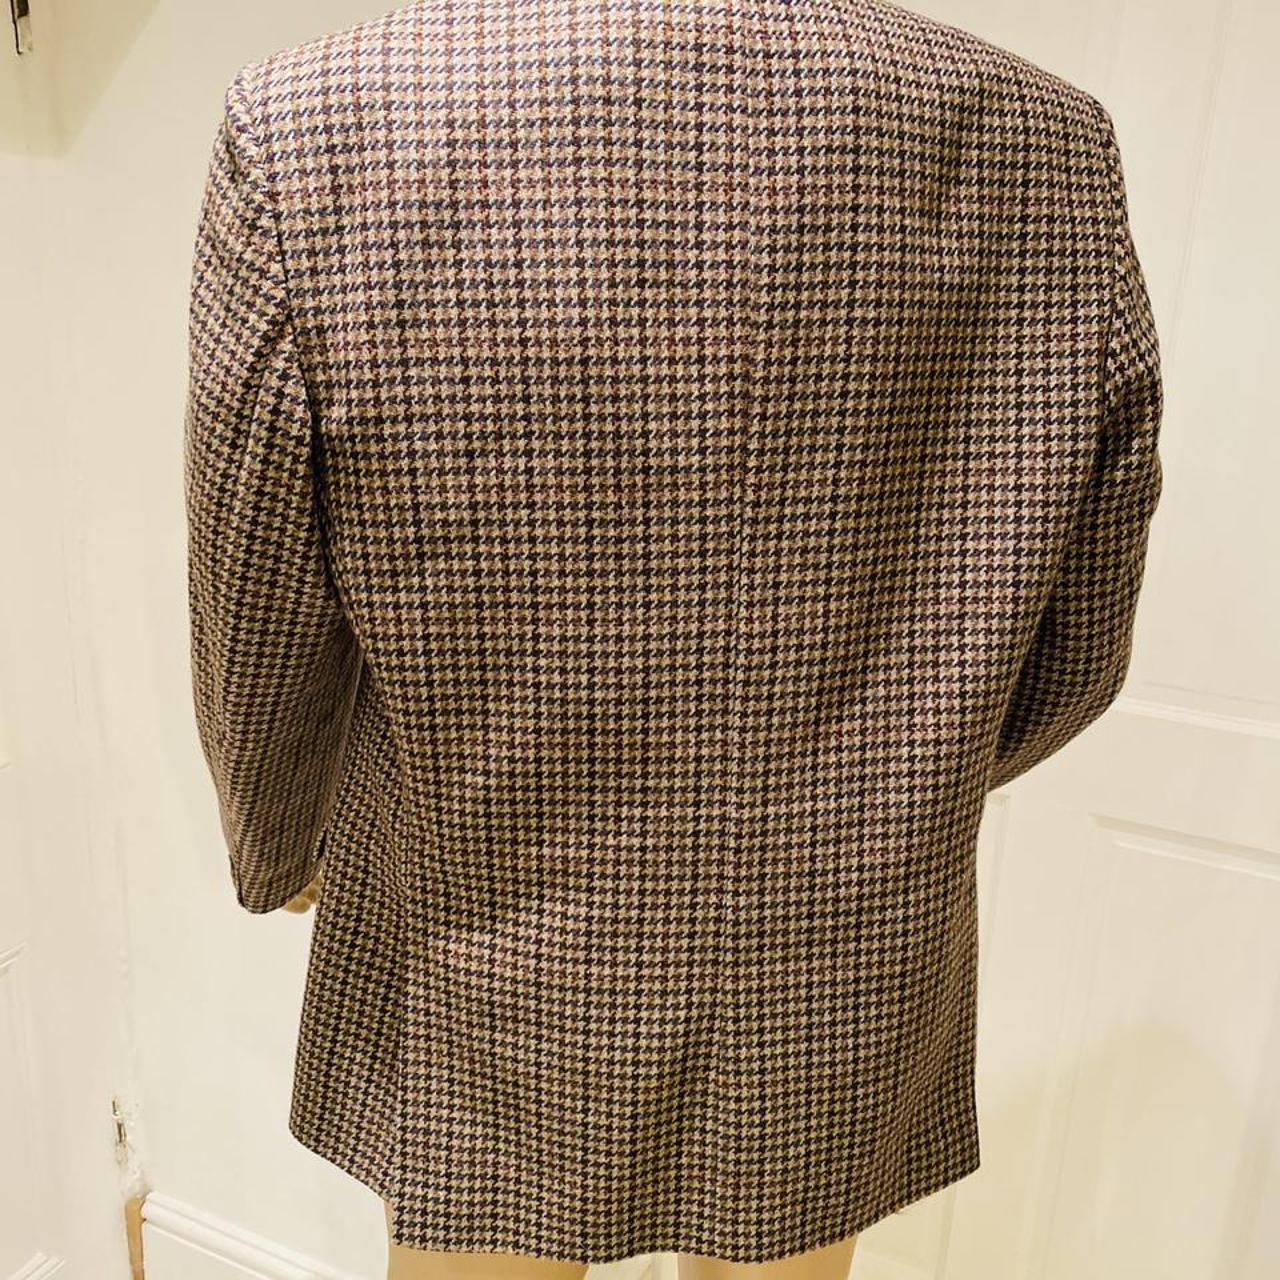 Nice Mens vintage tweed jacket made in England by... - Depop